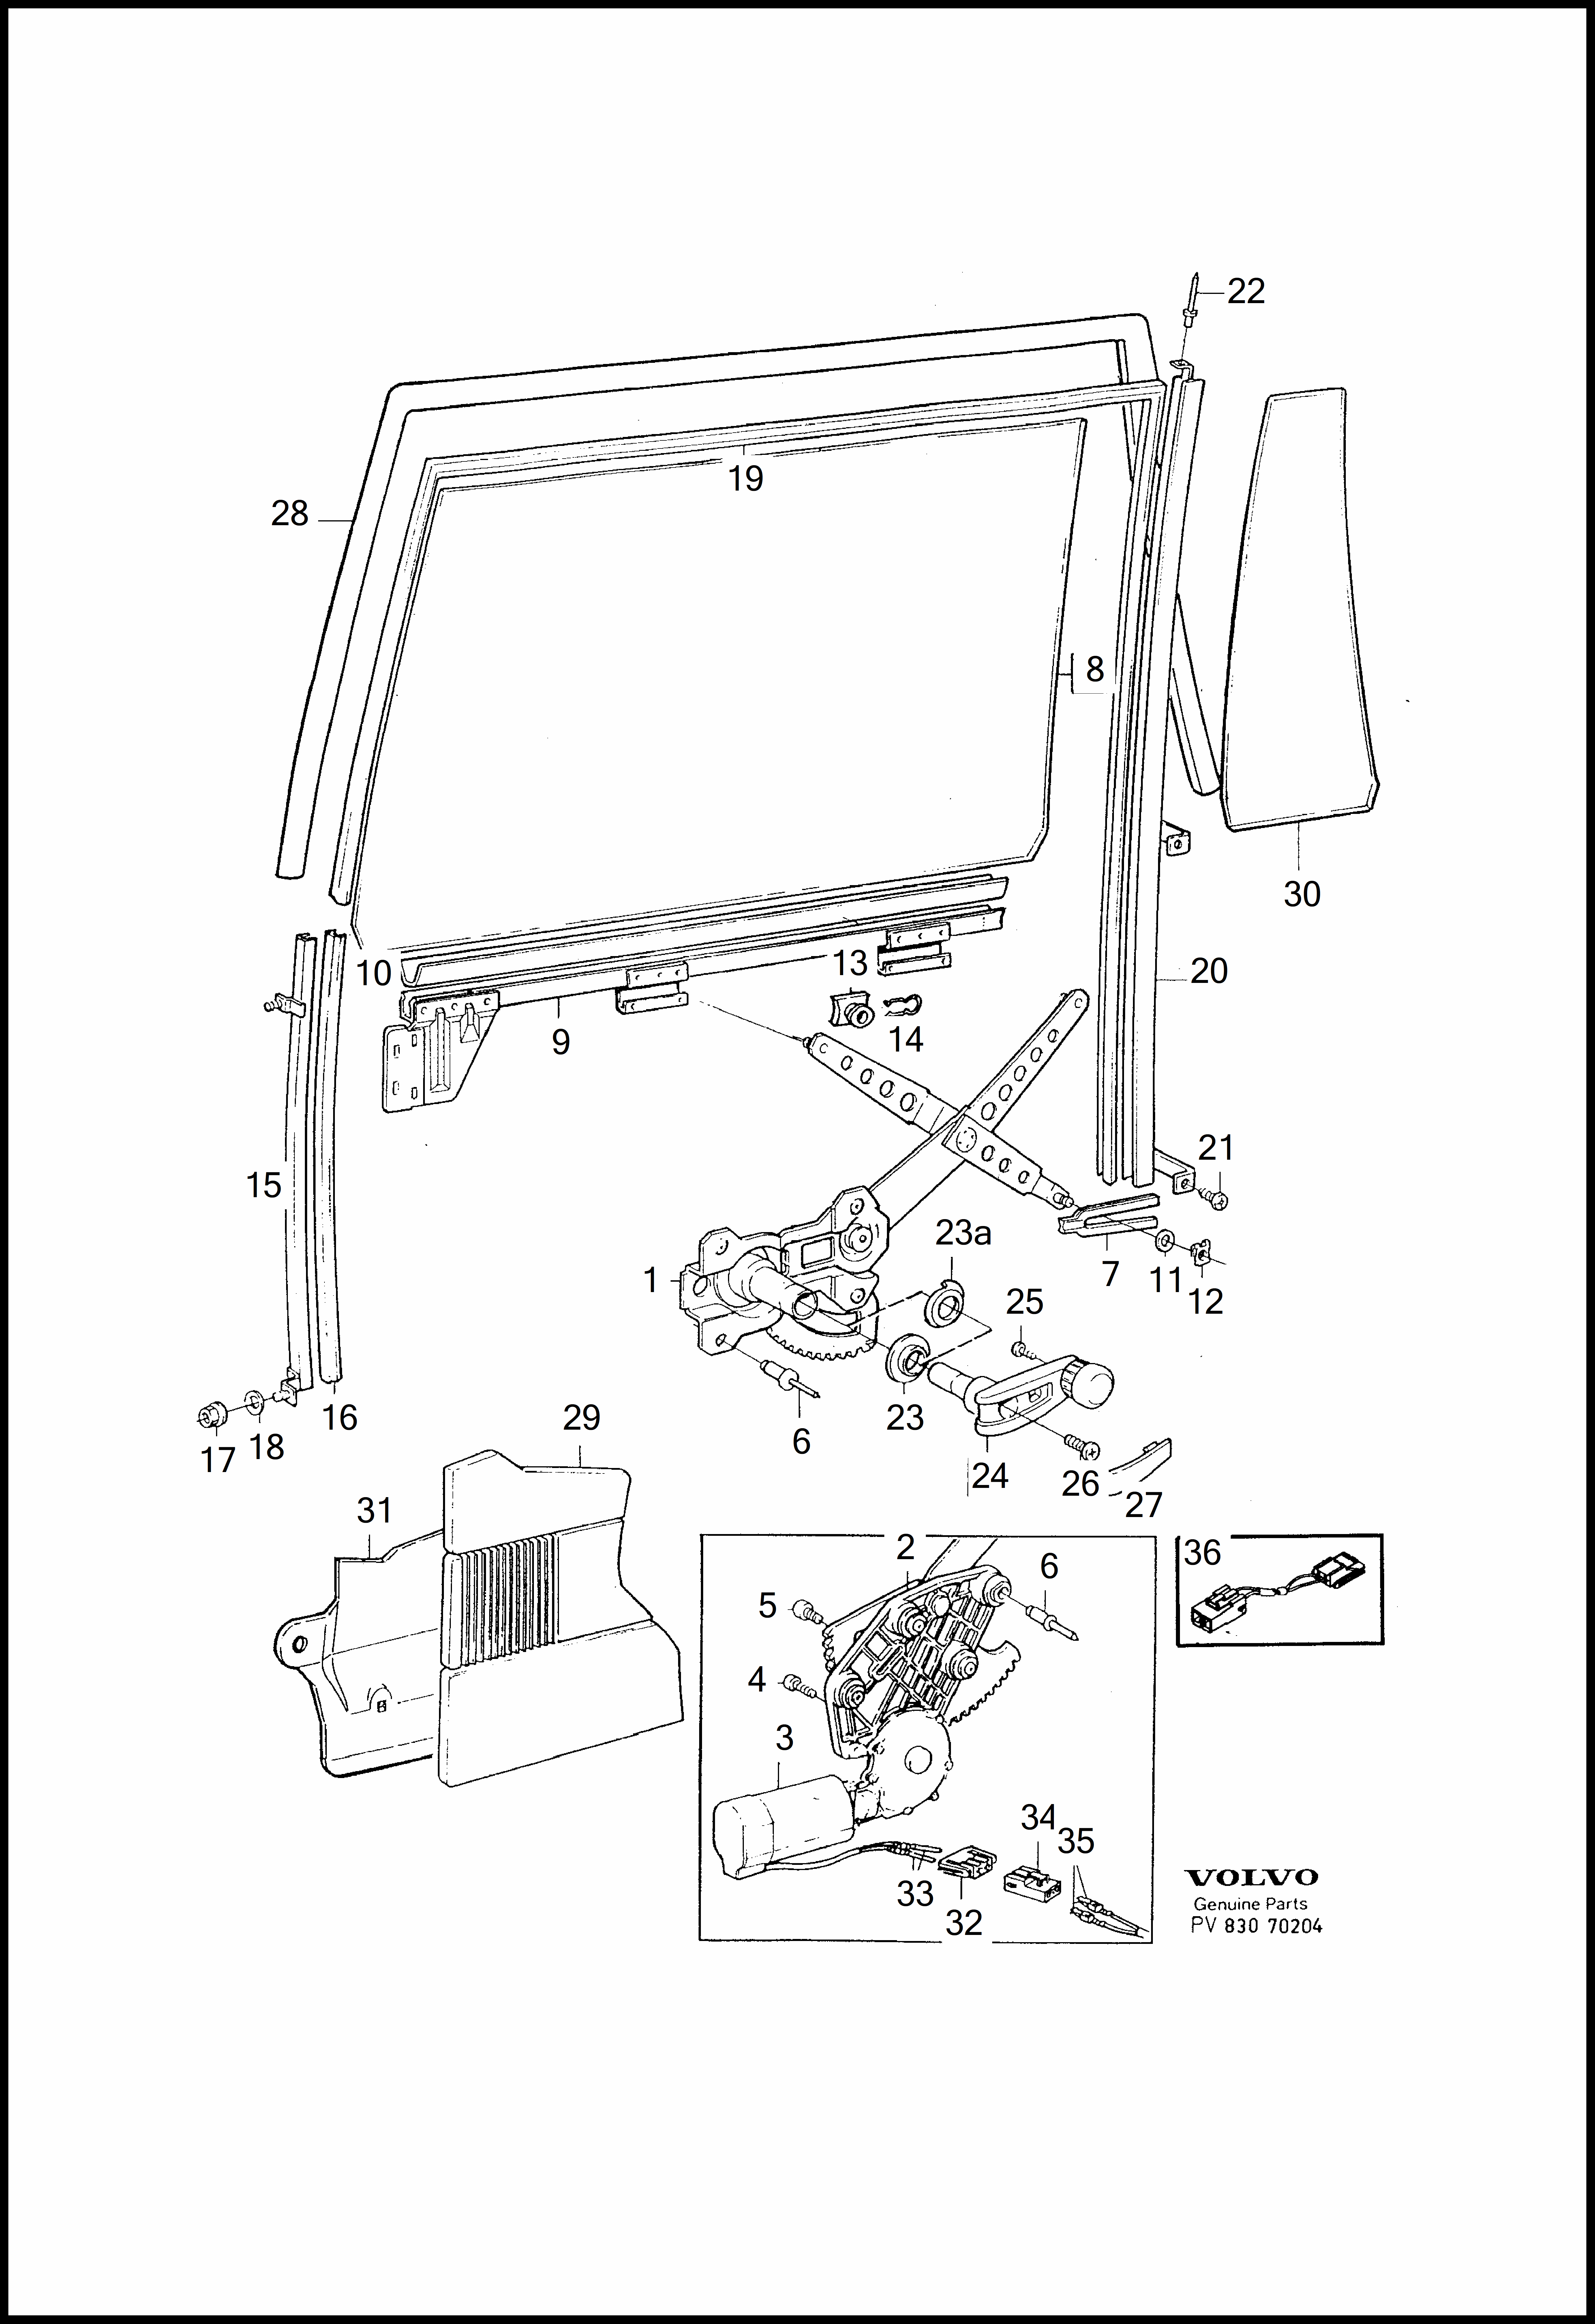 Window lift mechanism per Volvo 960 960